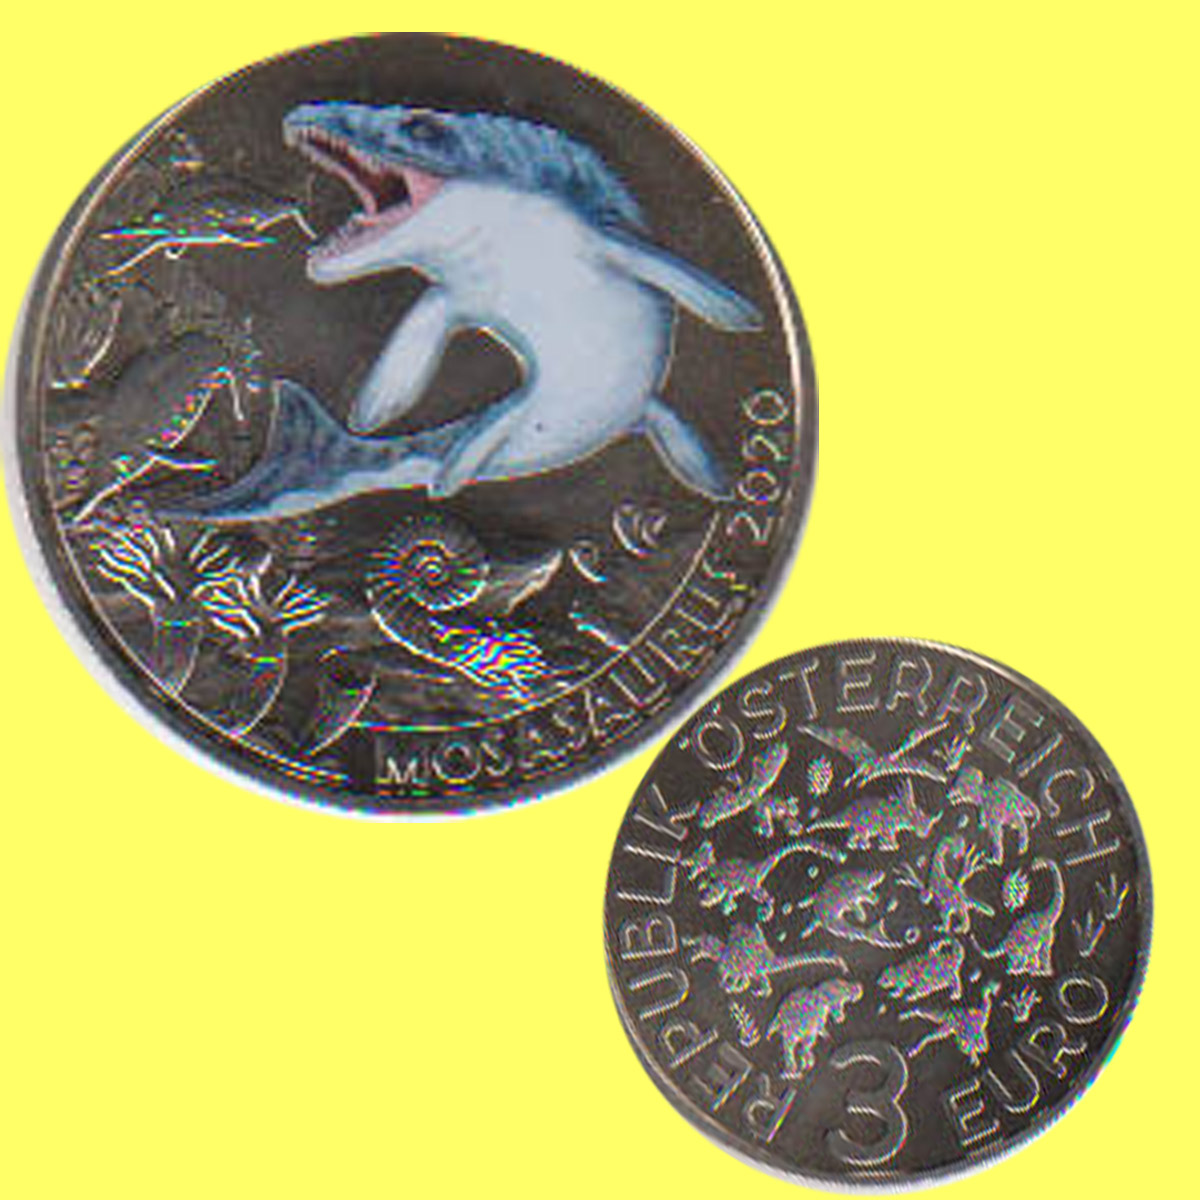  Offiz. 3 Euro-Farbmünze Österreich *Mosaurus hoffmanni* 2020 Nachtaktive Münzen   